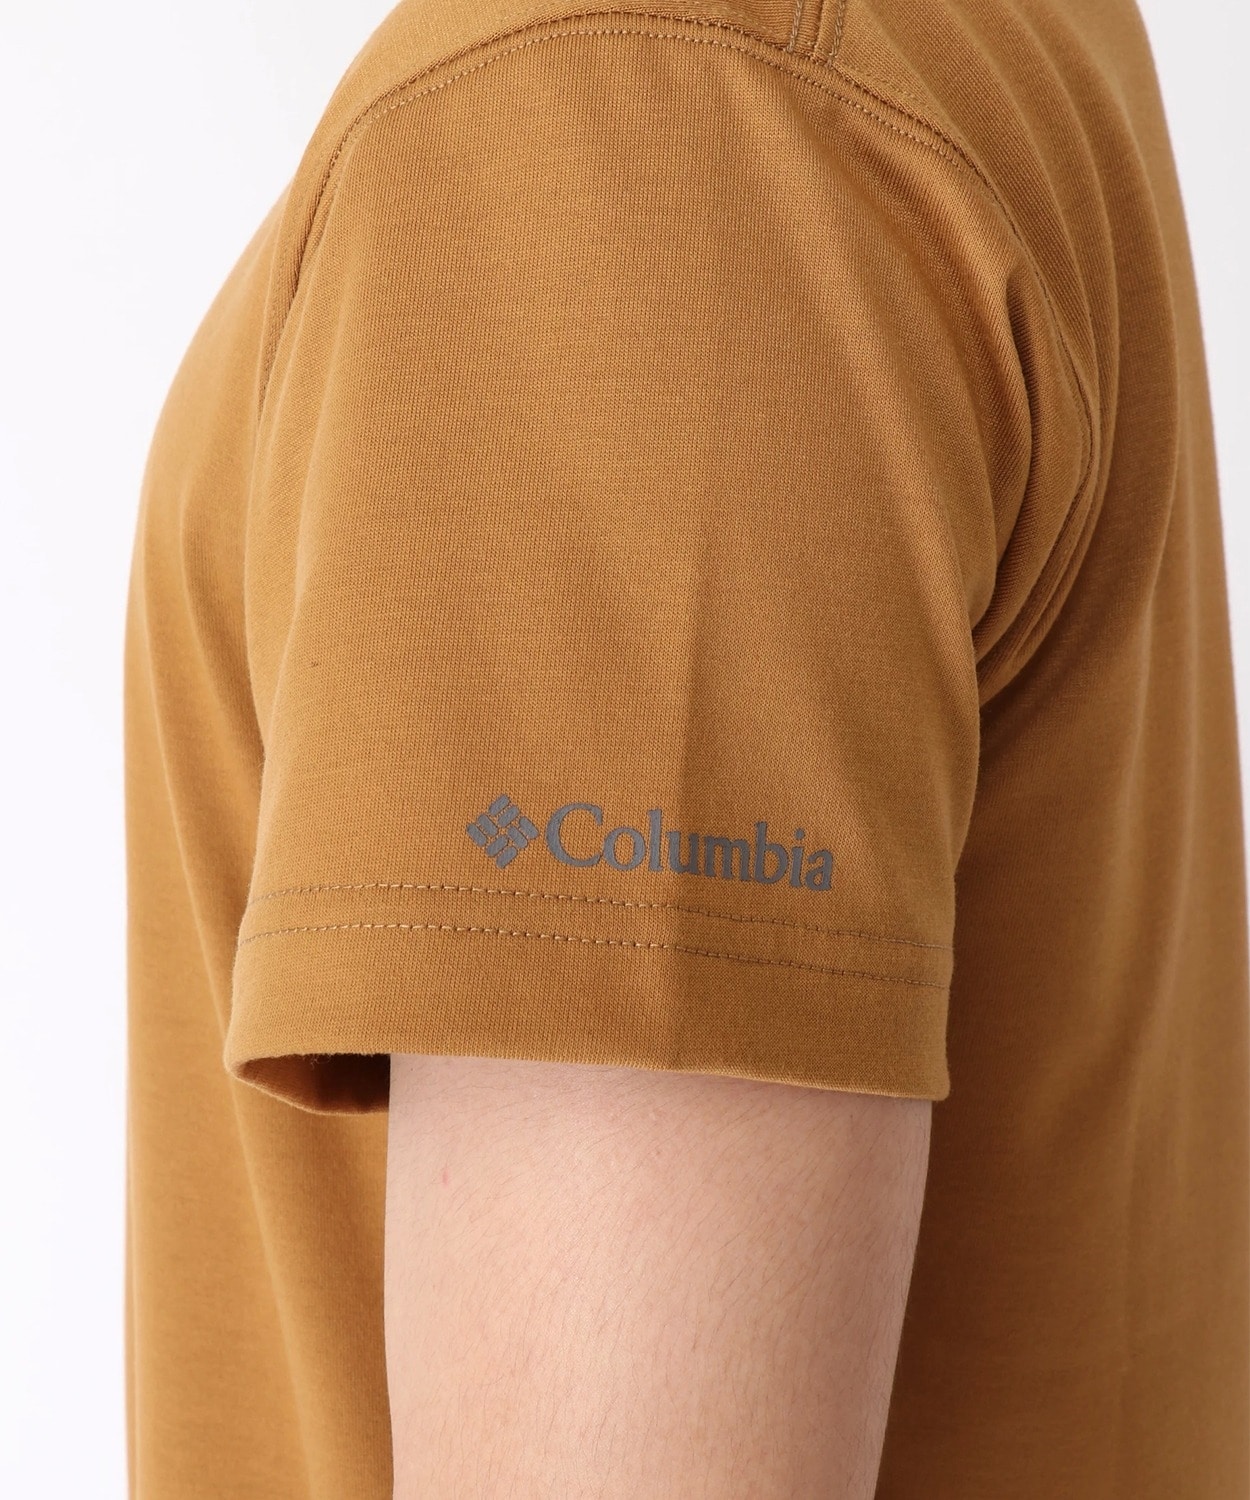 コロンビア公式サイトリーディトレイルショートスリーブTシャツ(XS Black): アウトレット商品以外用│アウトドア用品のコロンビア スポーツウェア公式通販サイト